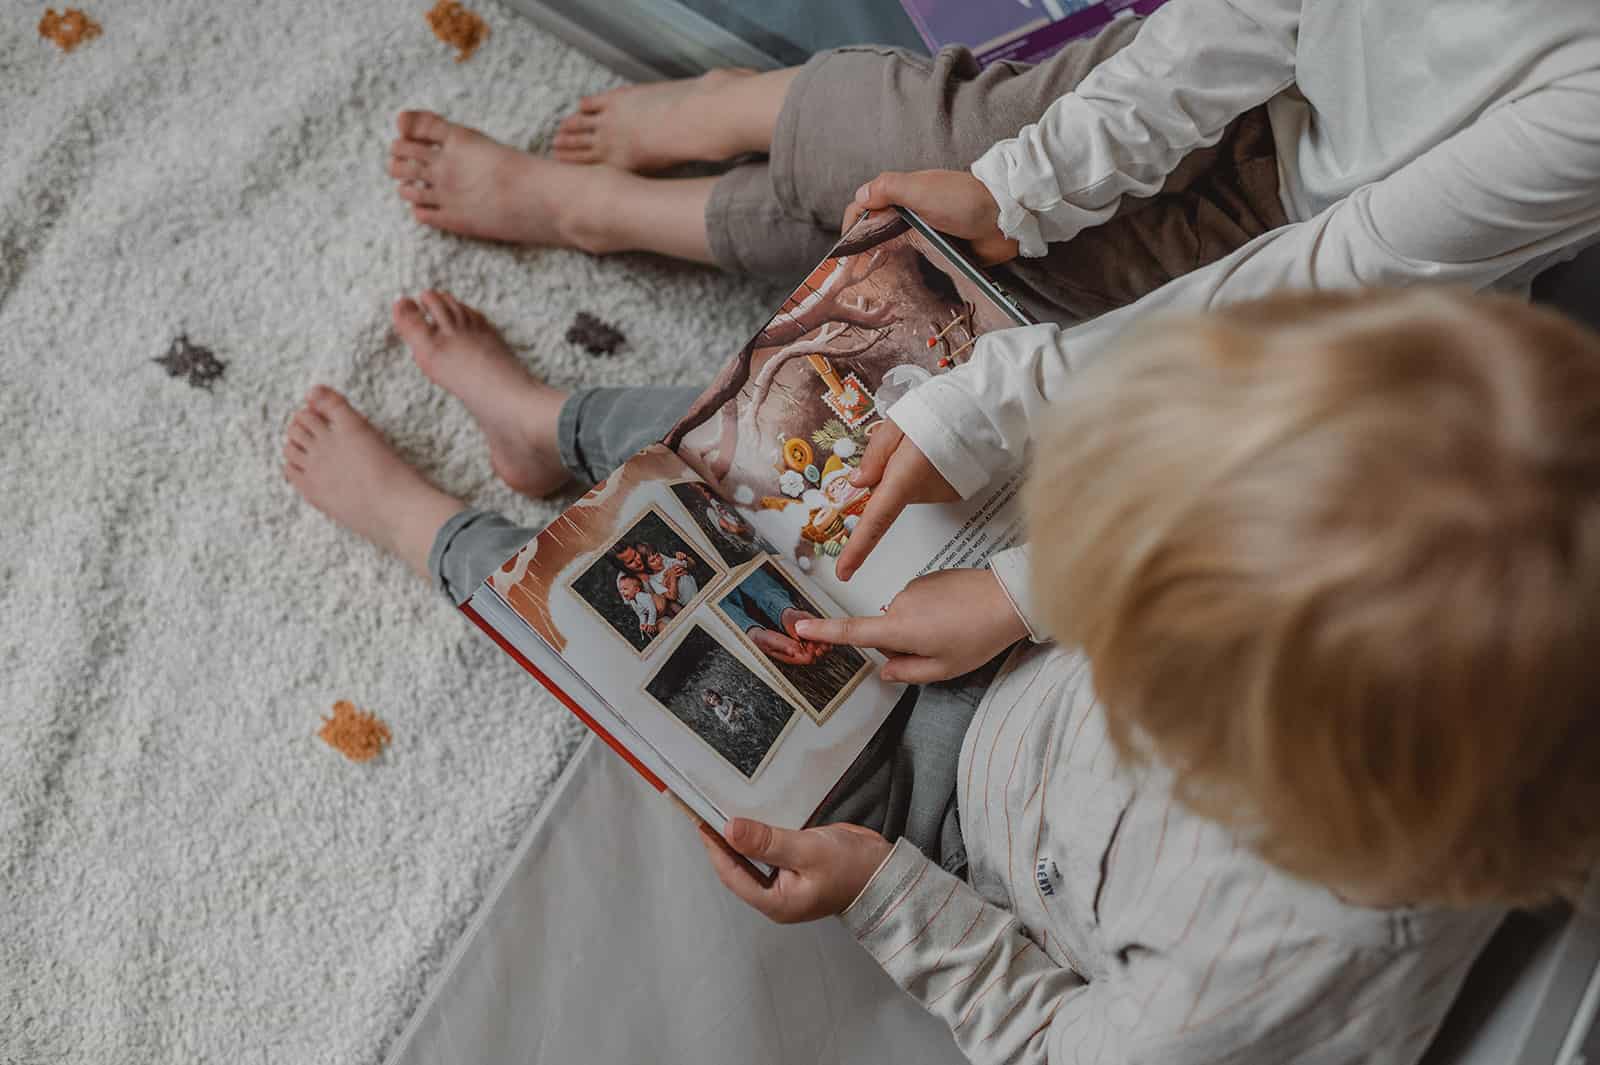 Familienalbum mit Wichtelgeschichte – Kinder lieben es, bekannte Gesichter auf Fotos zu entdecken.